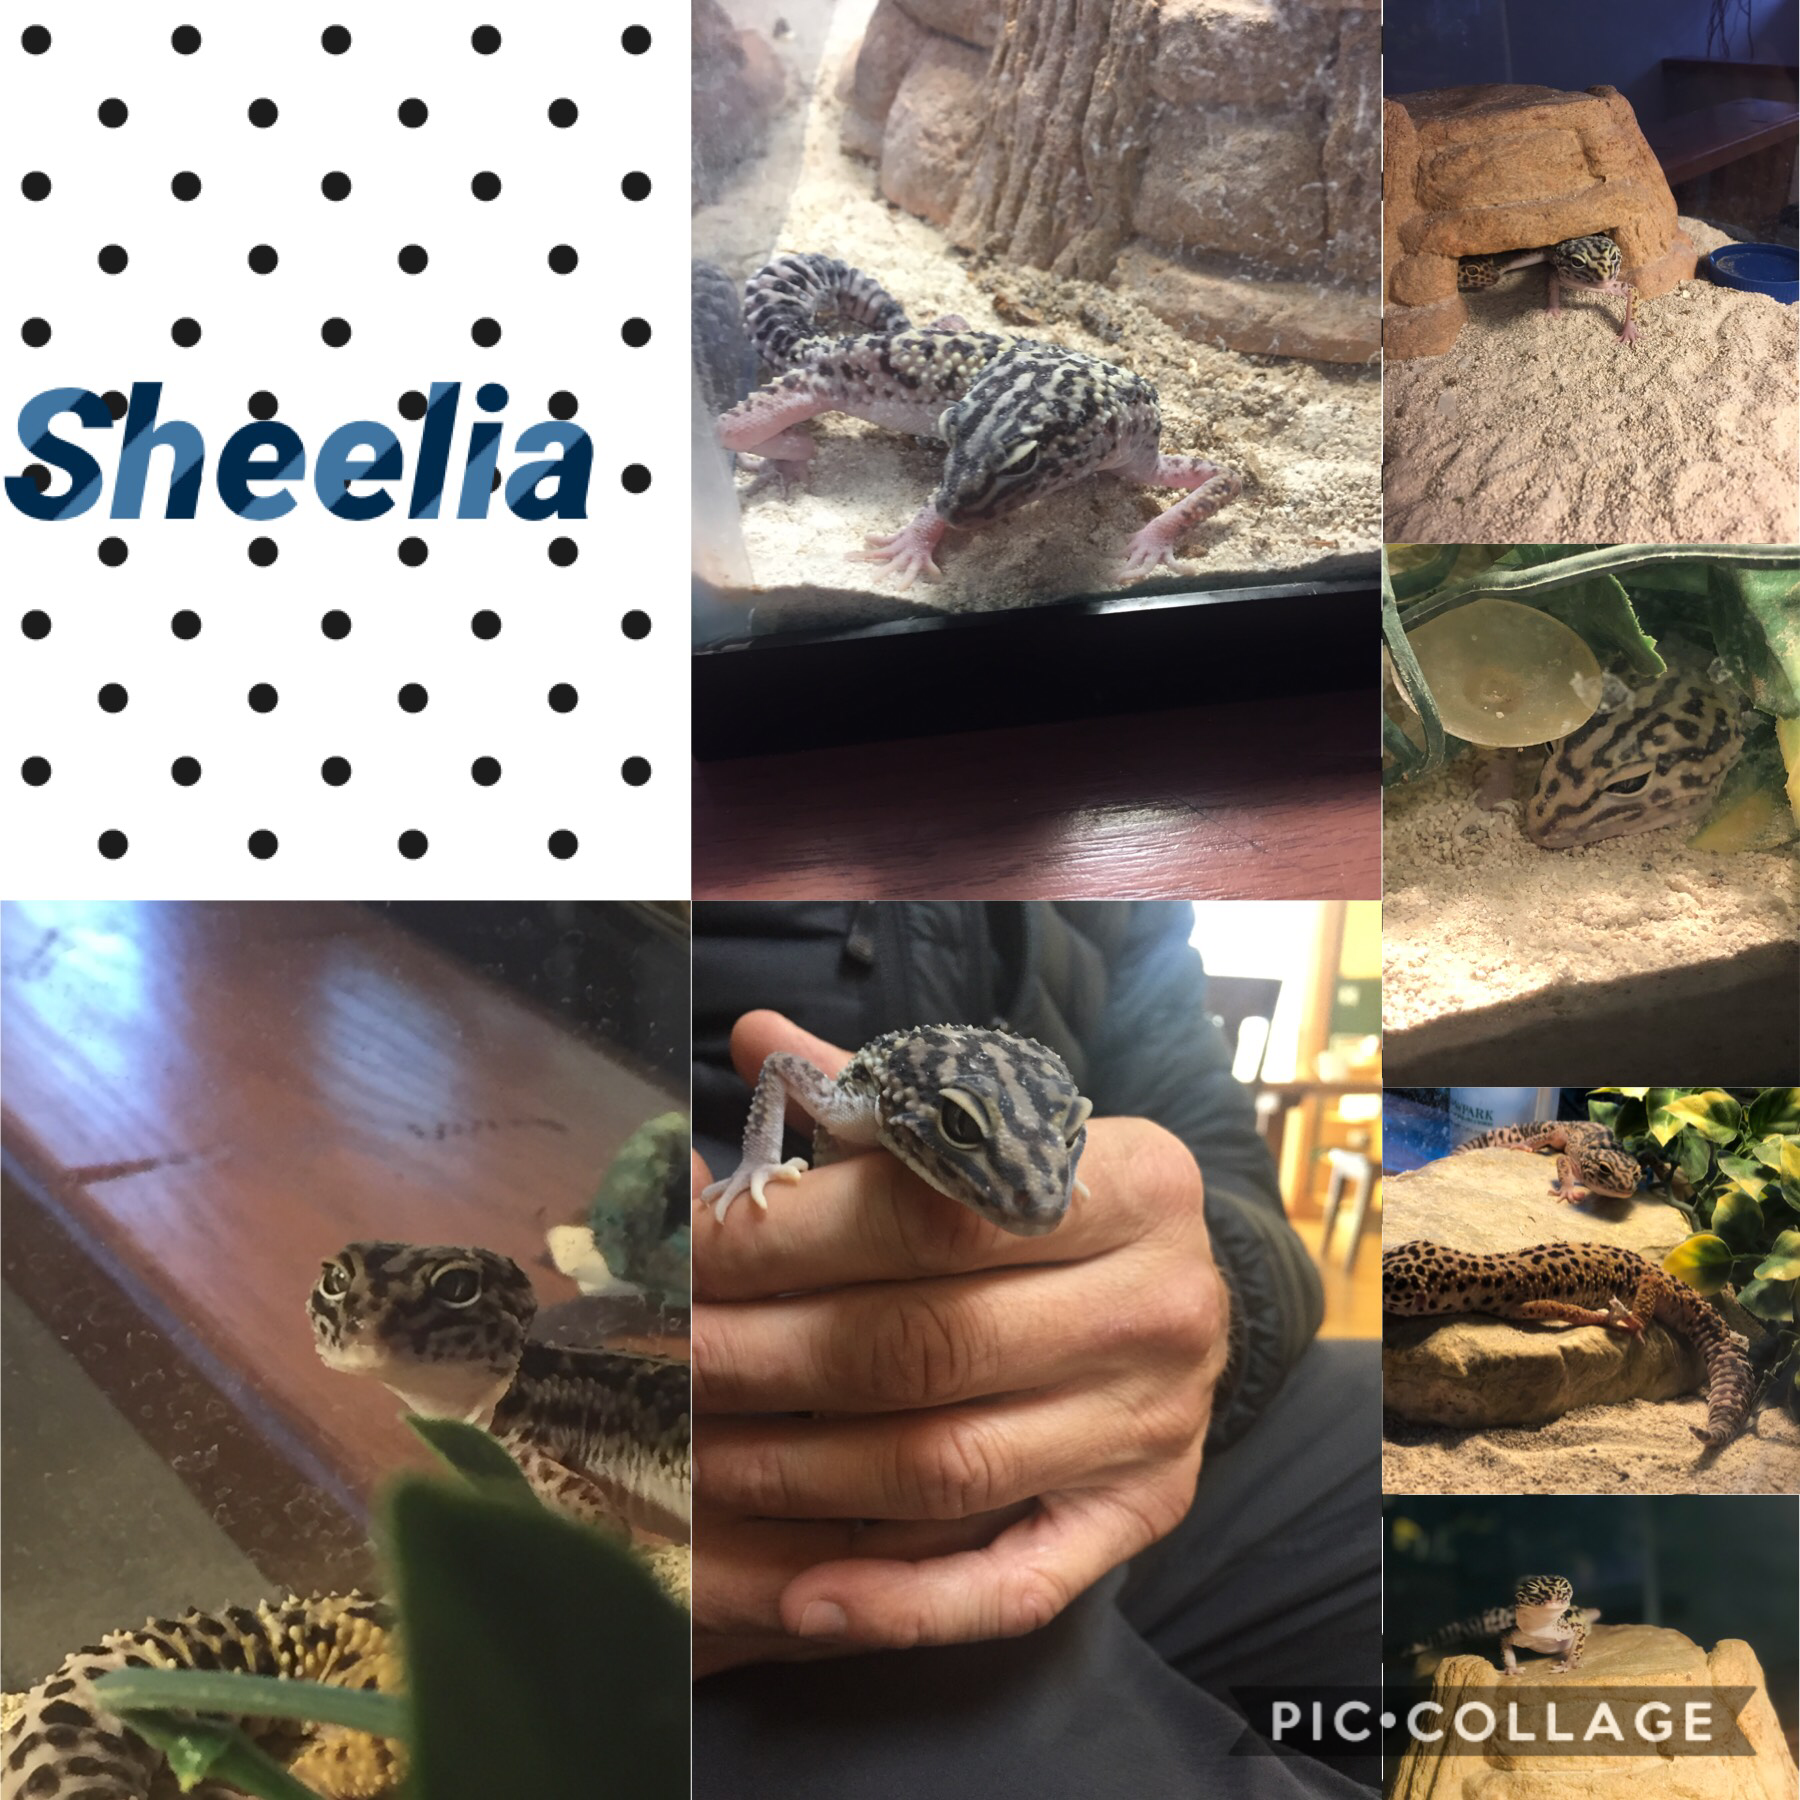 Sheelia is my loved geocko
